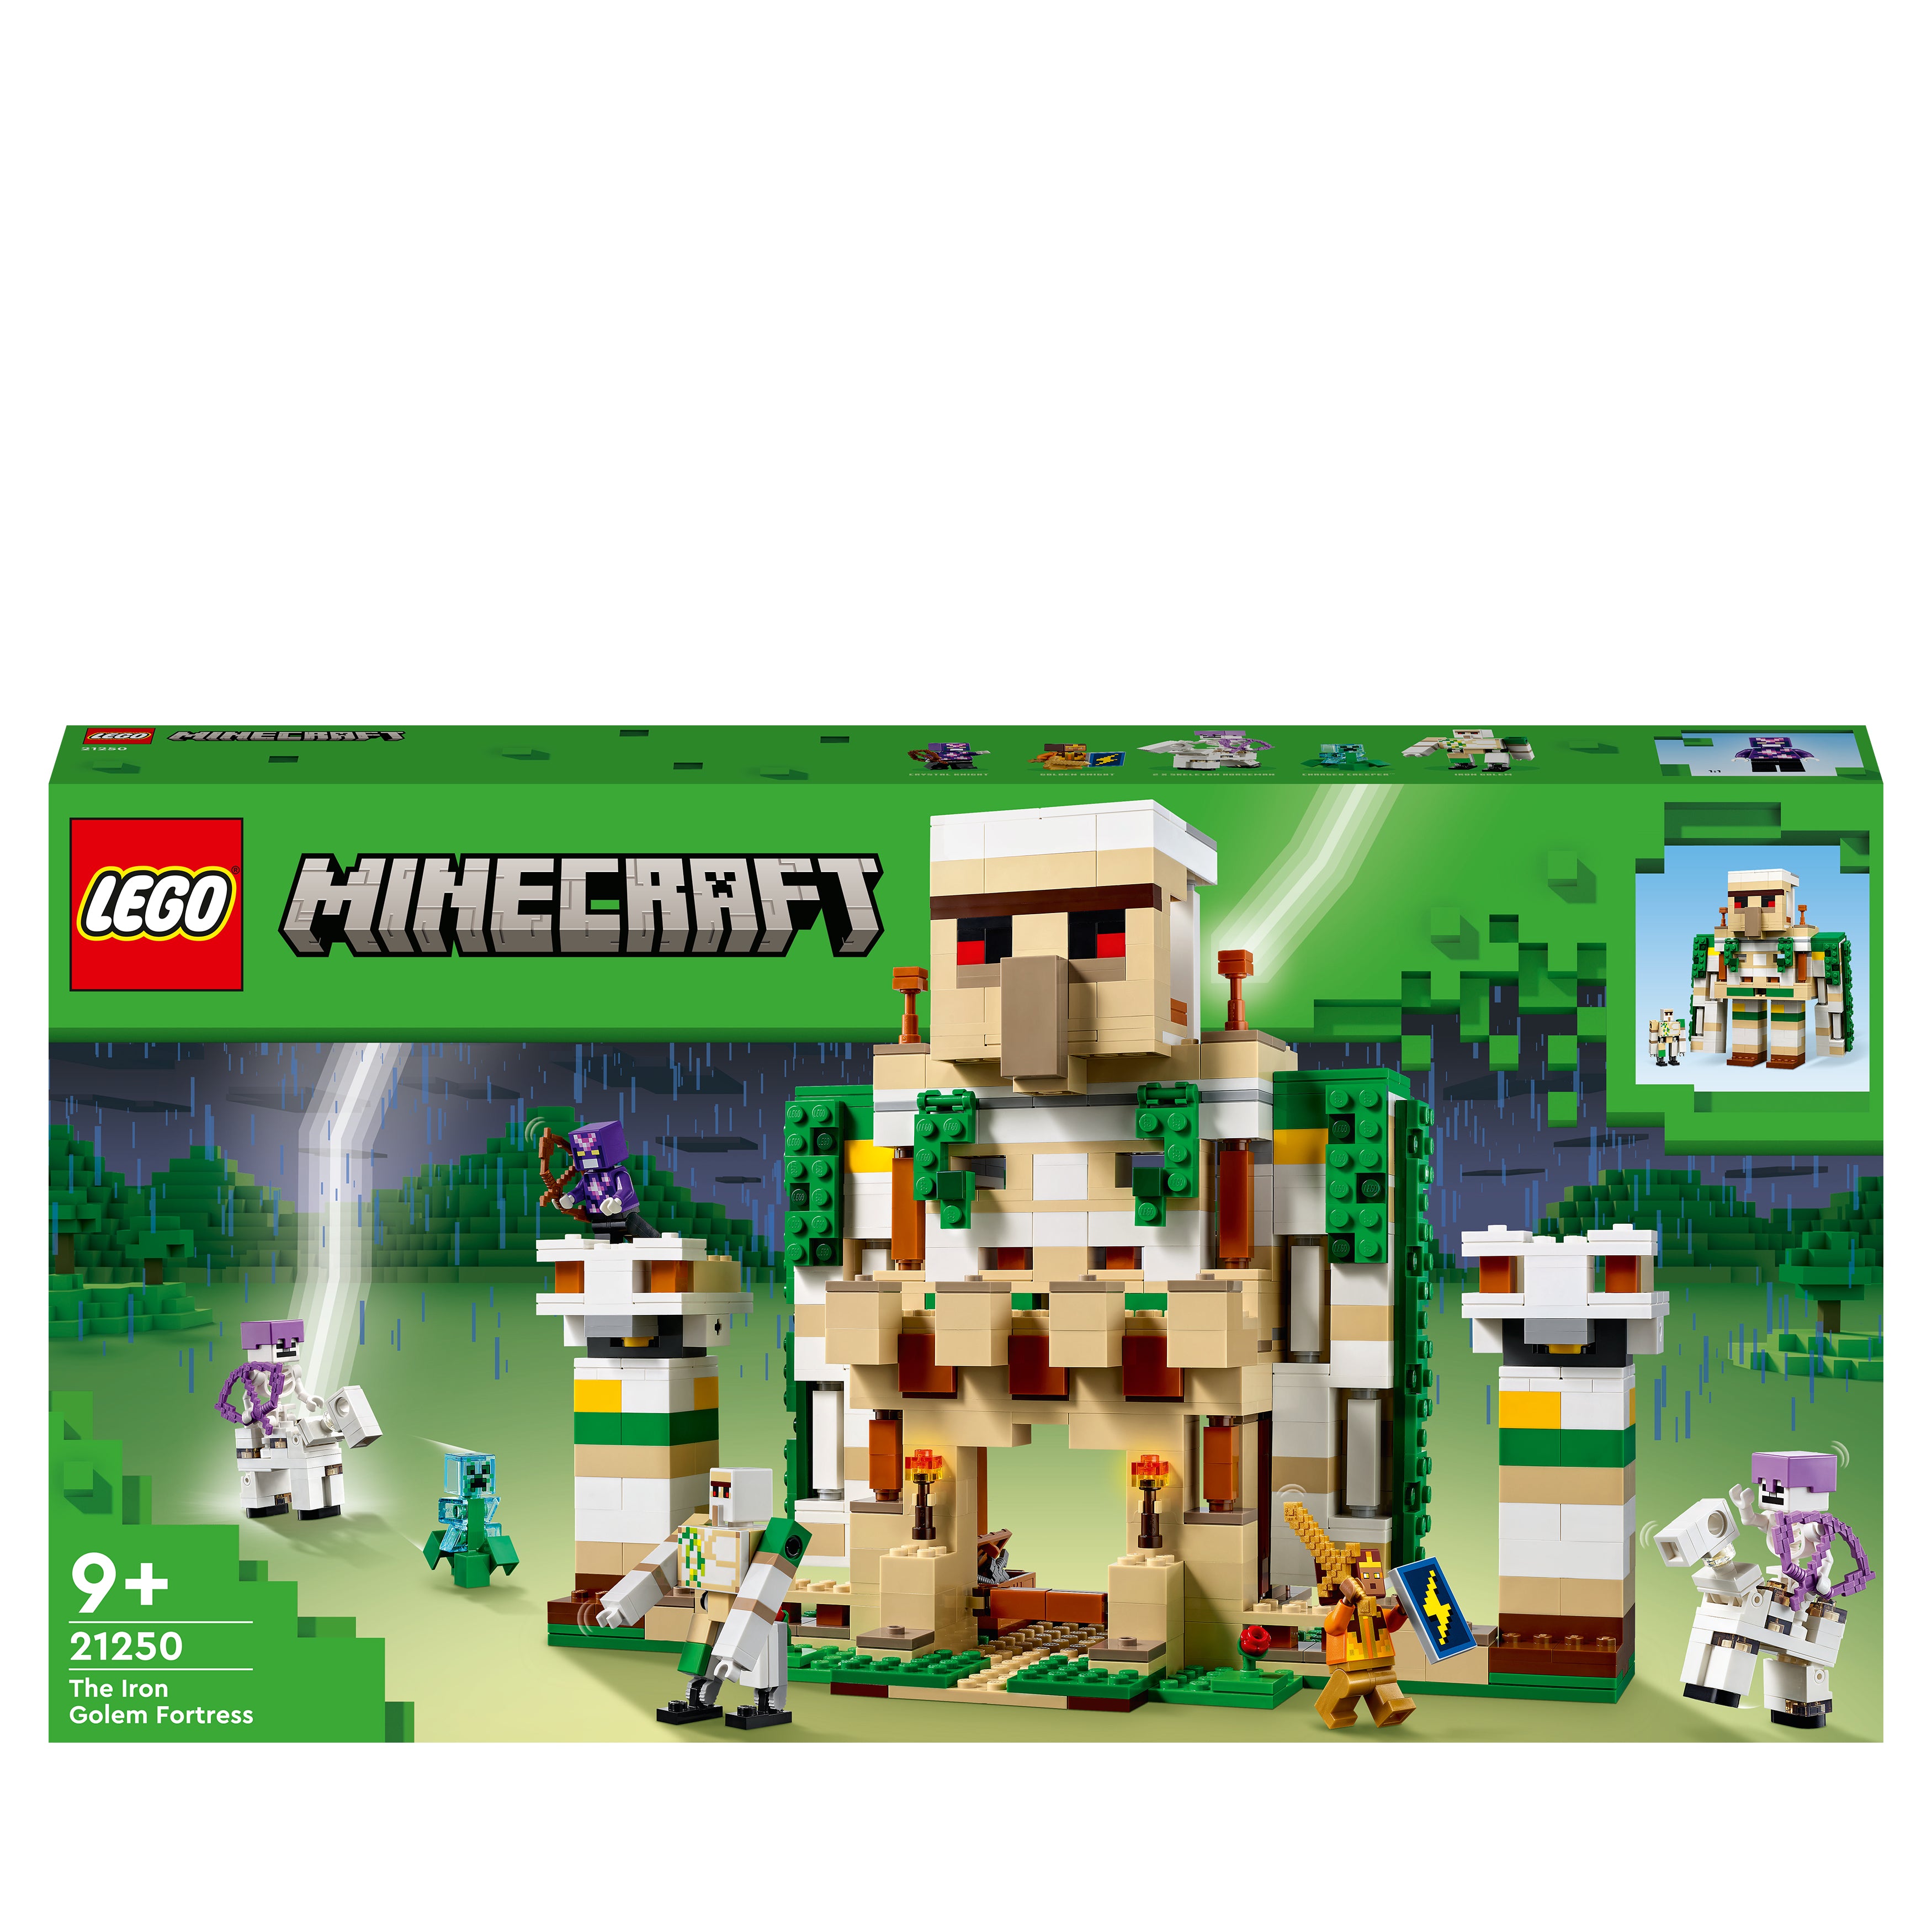 Billede af LEGO Minecraft - The Iron Golem Fortress (21250) hos Geek´d